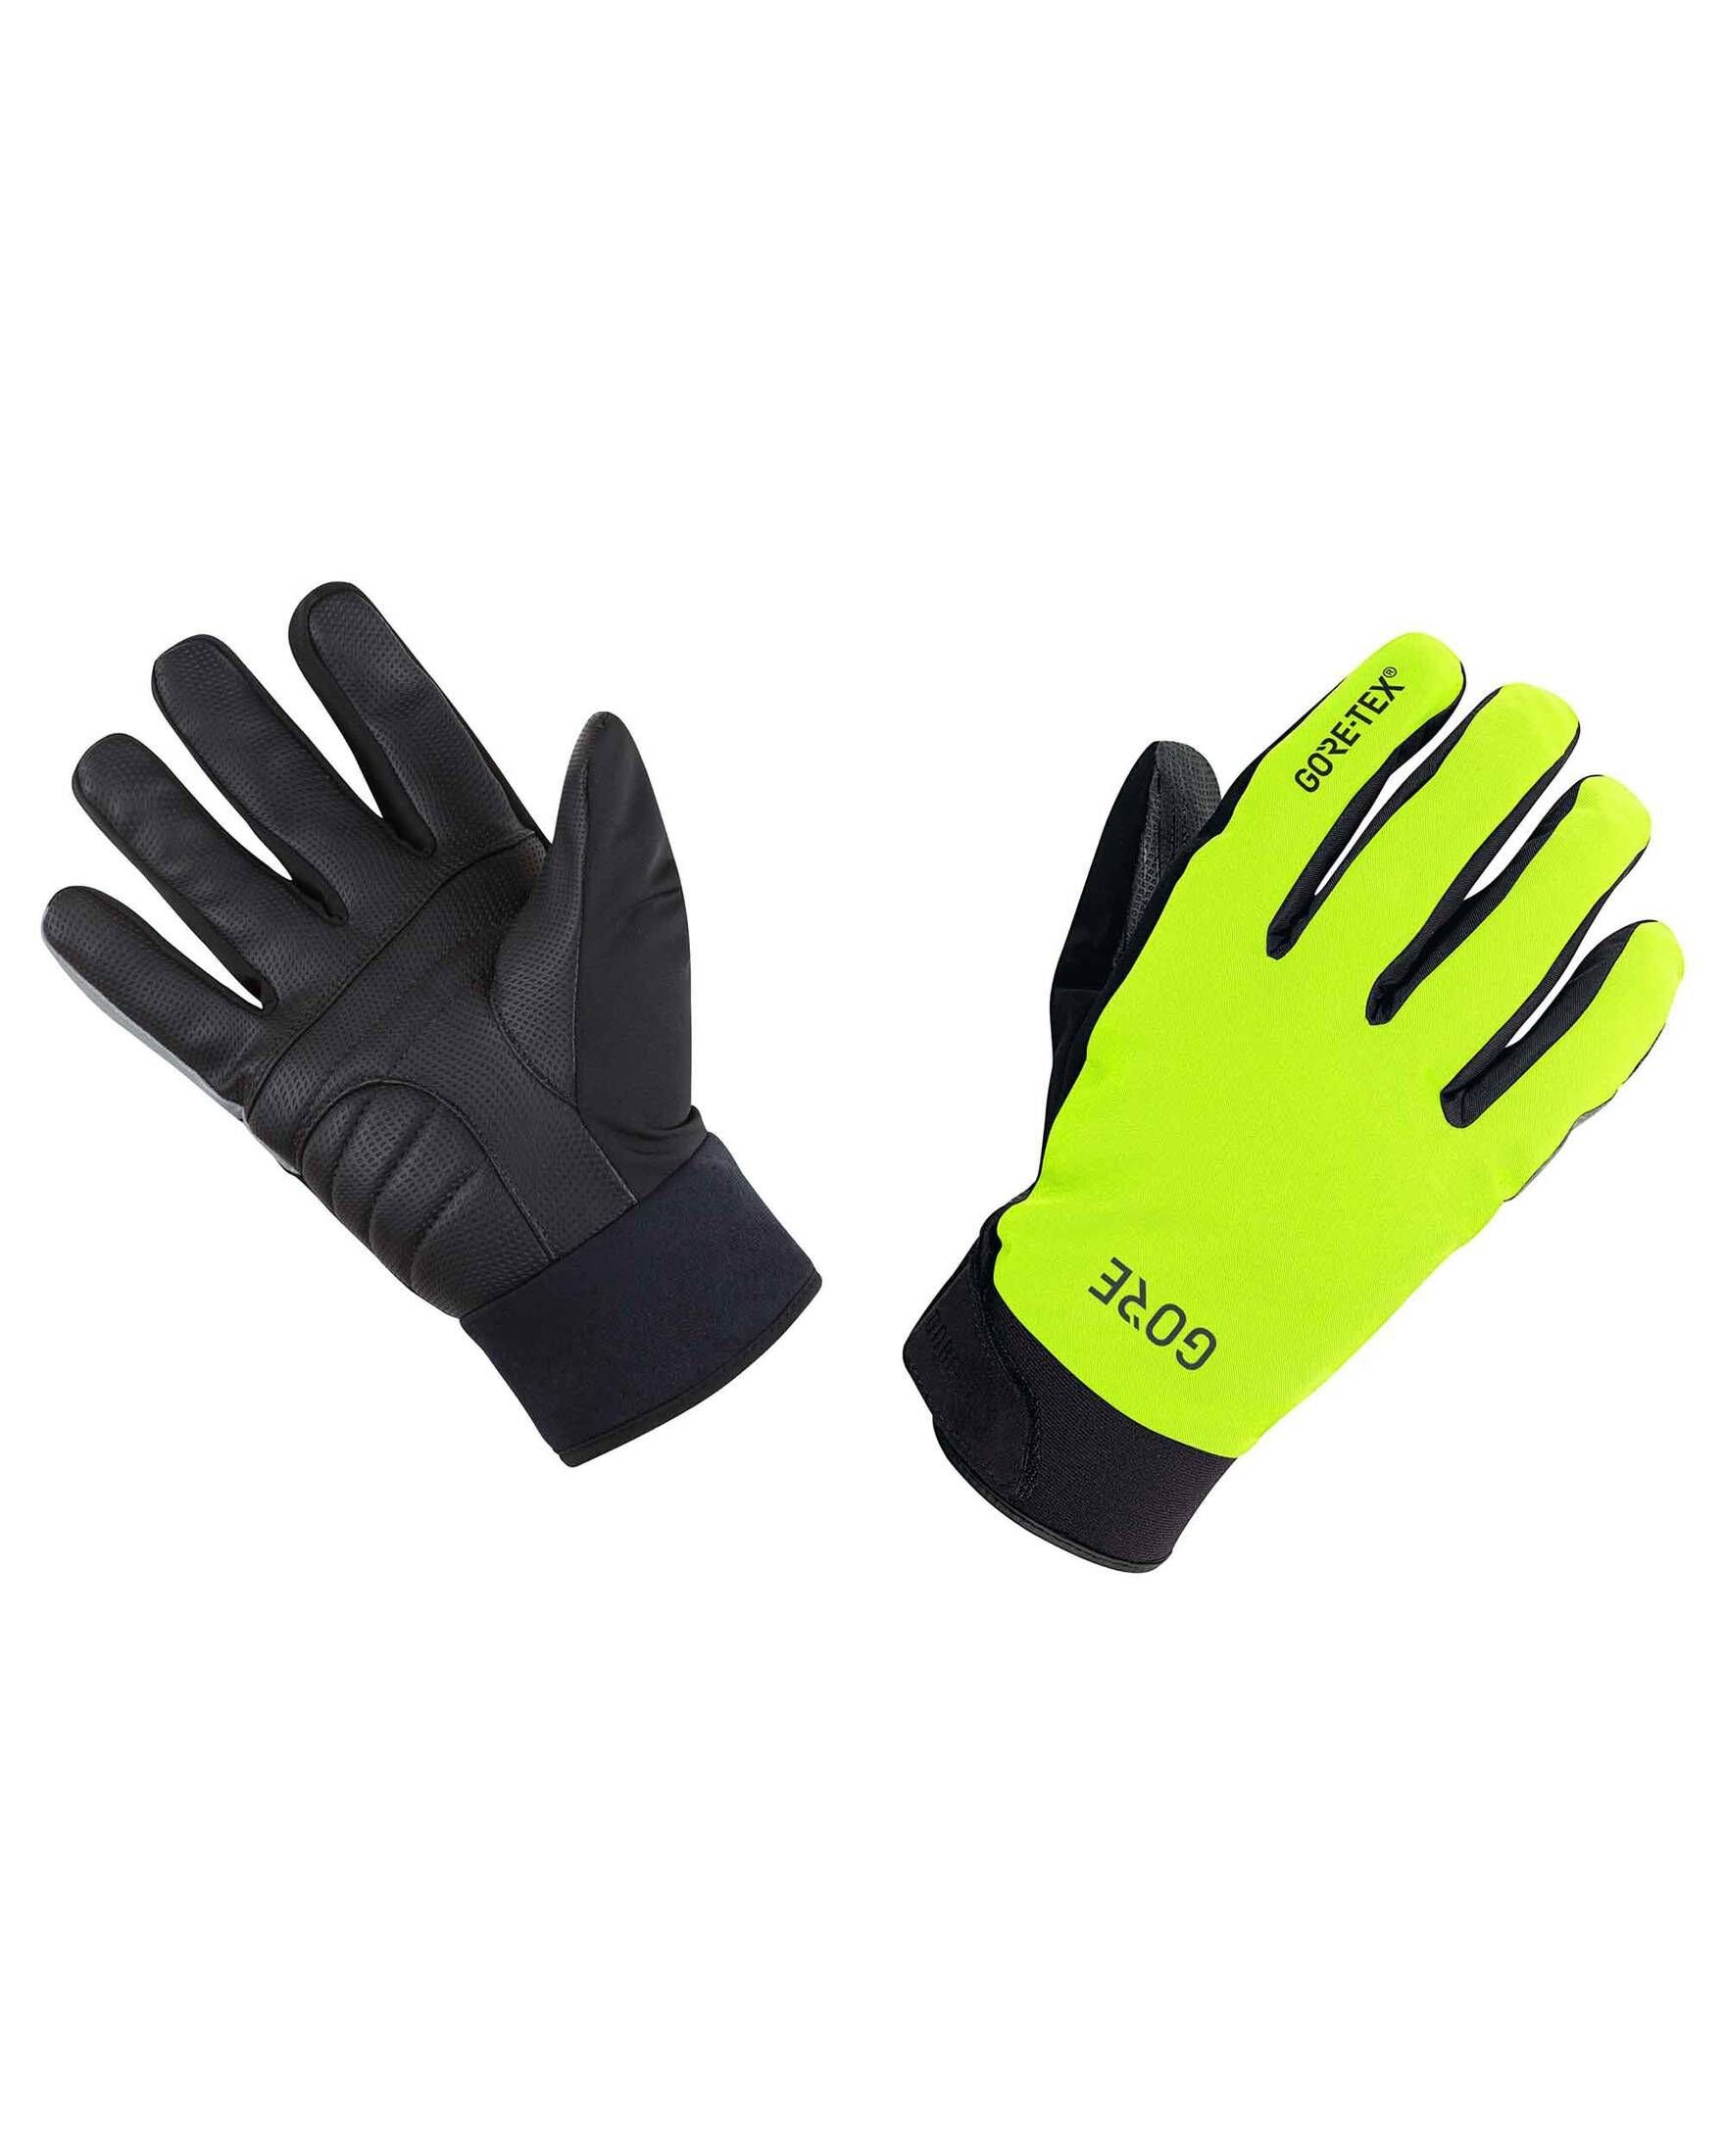 GORE® Wear Fahrradhandschuhe Herren Handschuhe C5 GORE-TEX Thermo GLOVES schwarz/gelb (703)